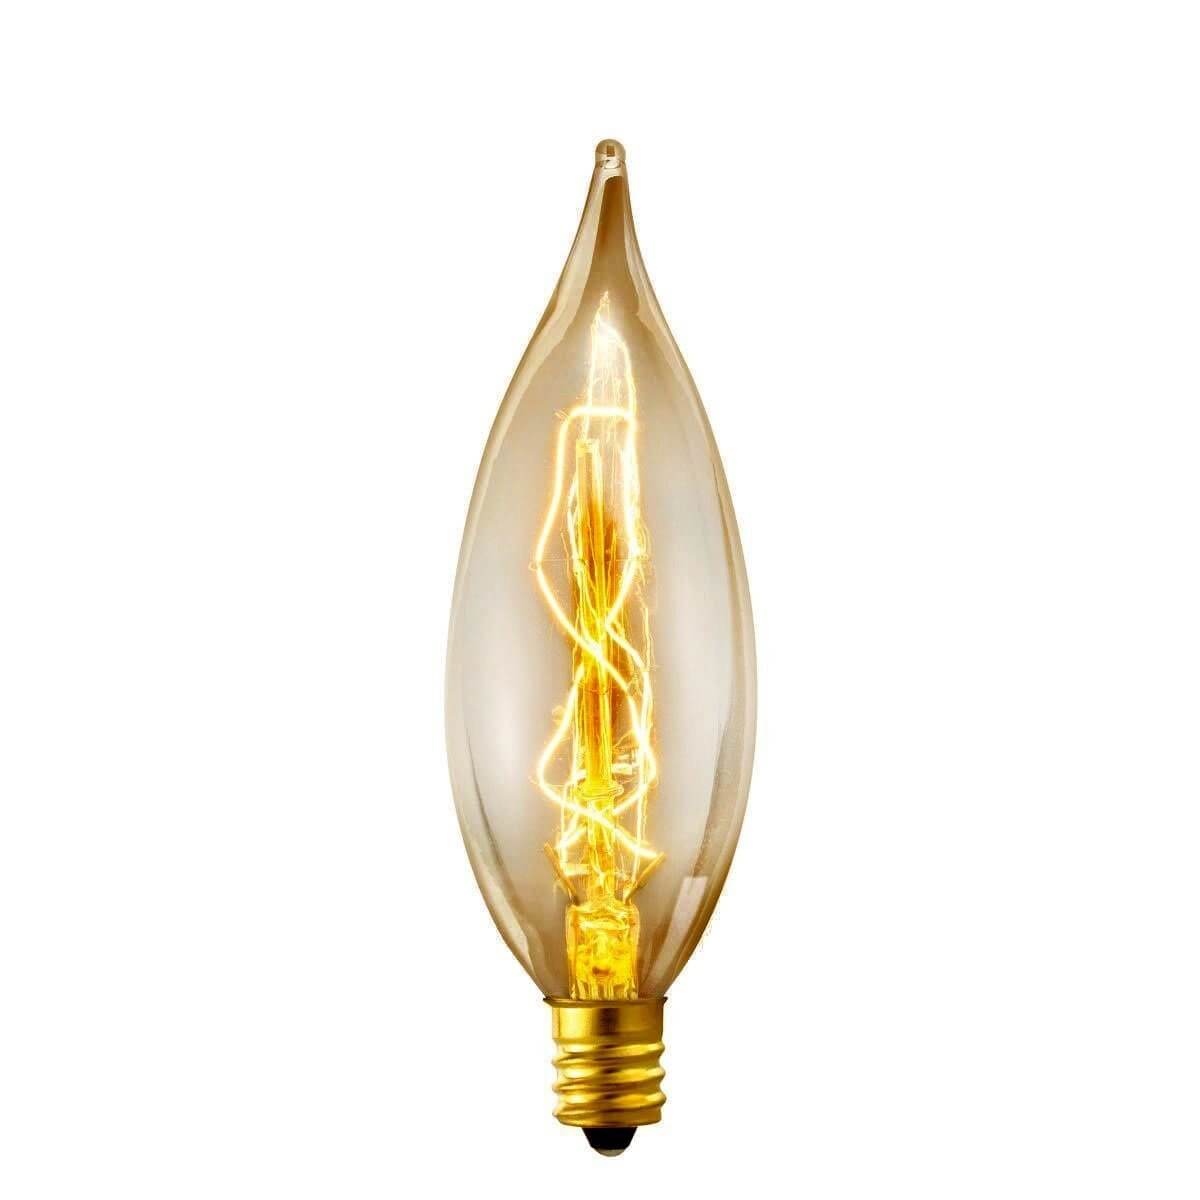 Flame Tip Edison Light Bulb